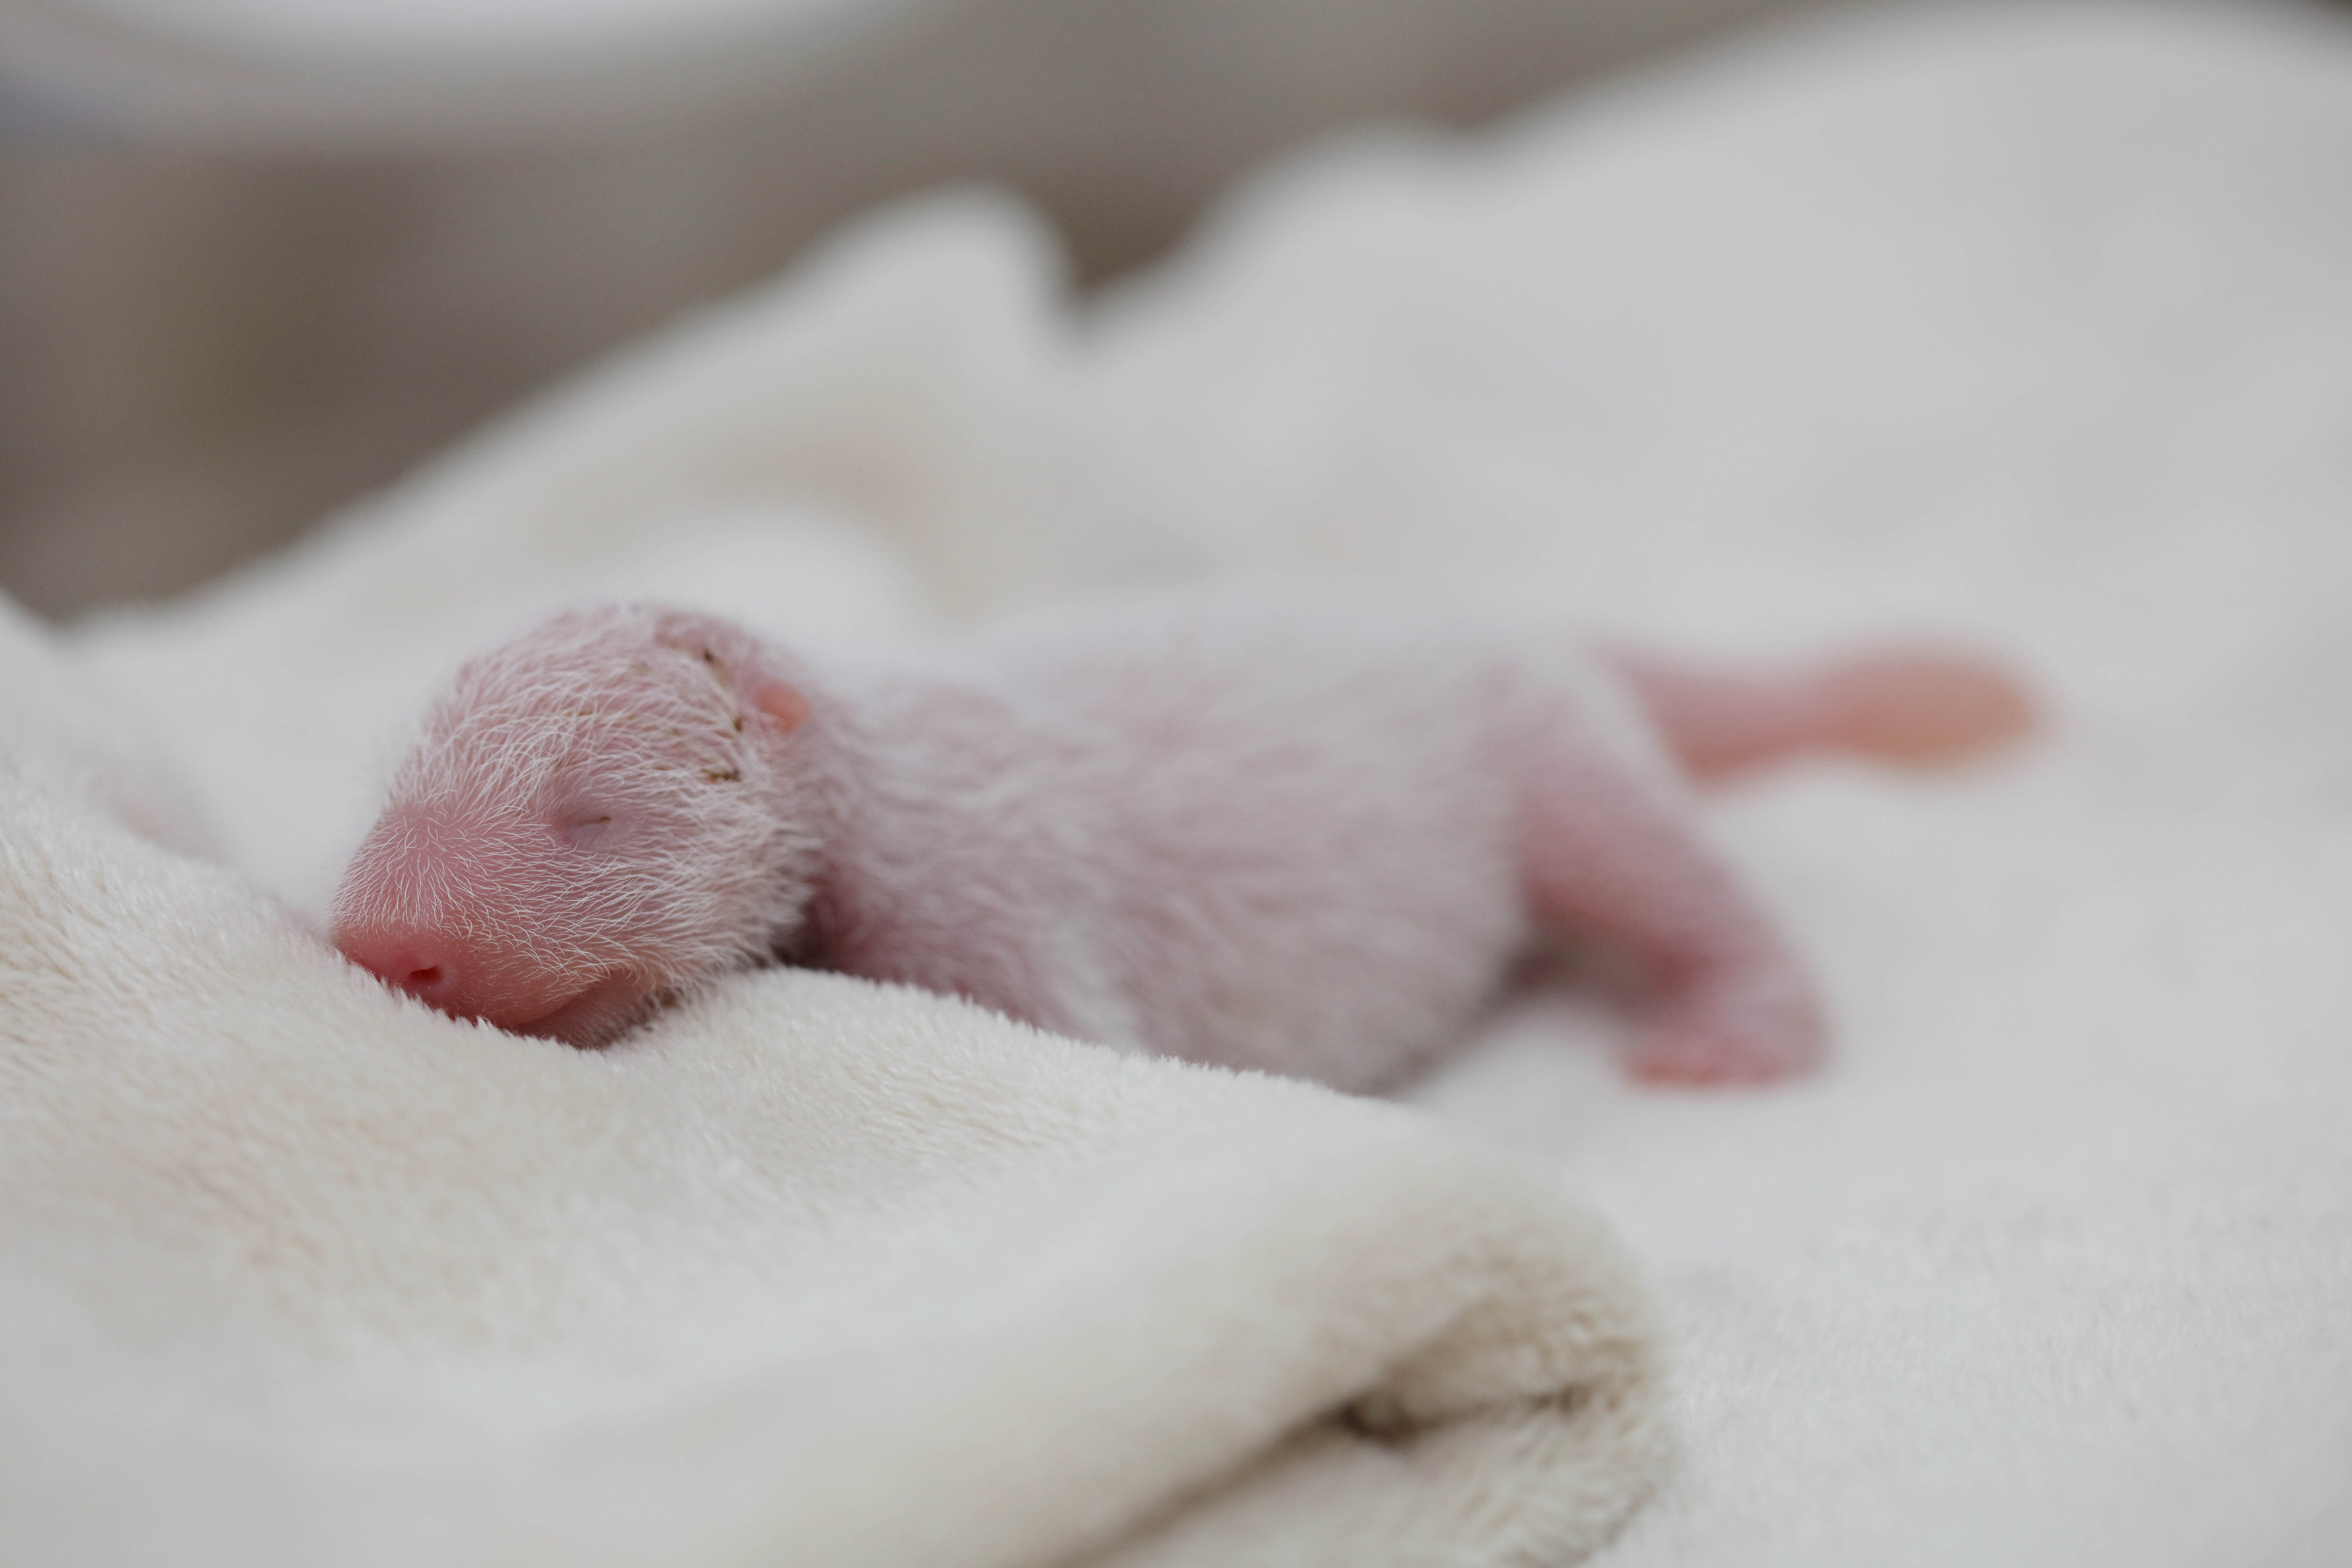 Родившийся детеныш панды. Детёныш панды новорожденный. Новорождённый денетыш панды. Малыш панды новорожденный. Новорожденный Медвежонок панды.